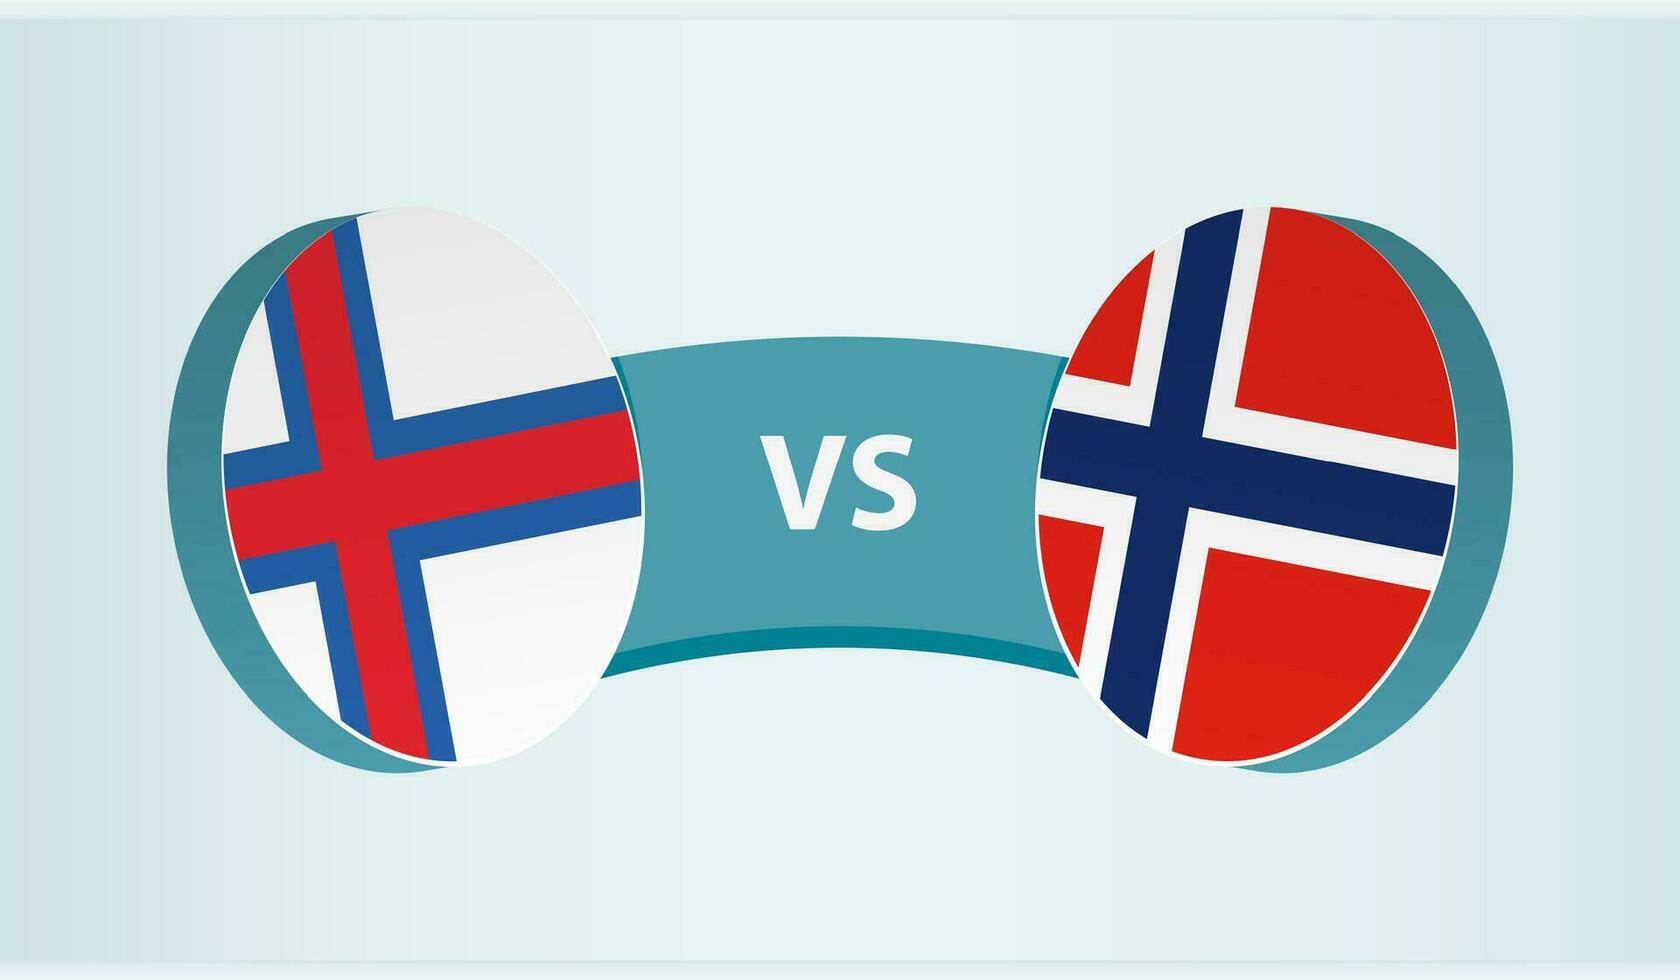 faroe öar mot norge, team sporter konkurrens begrepp. vektor